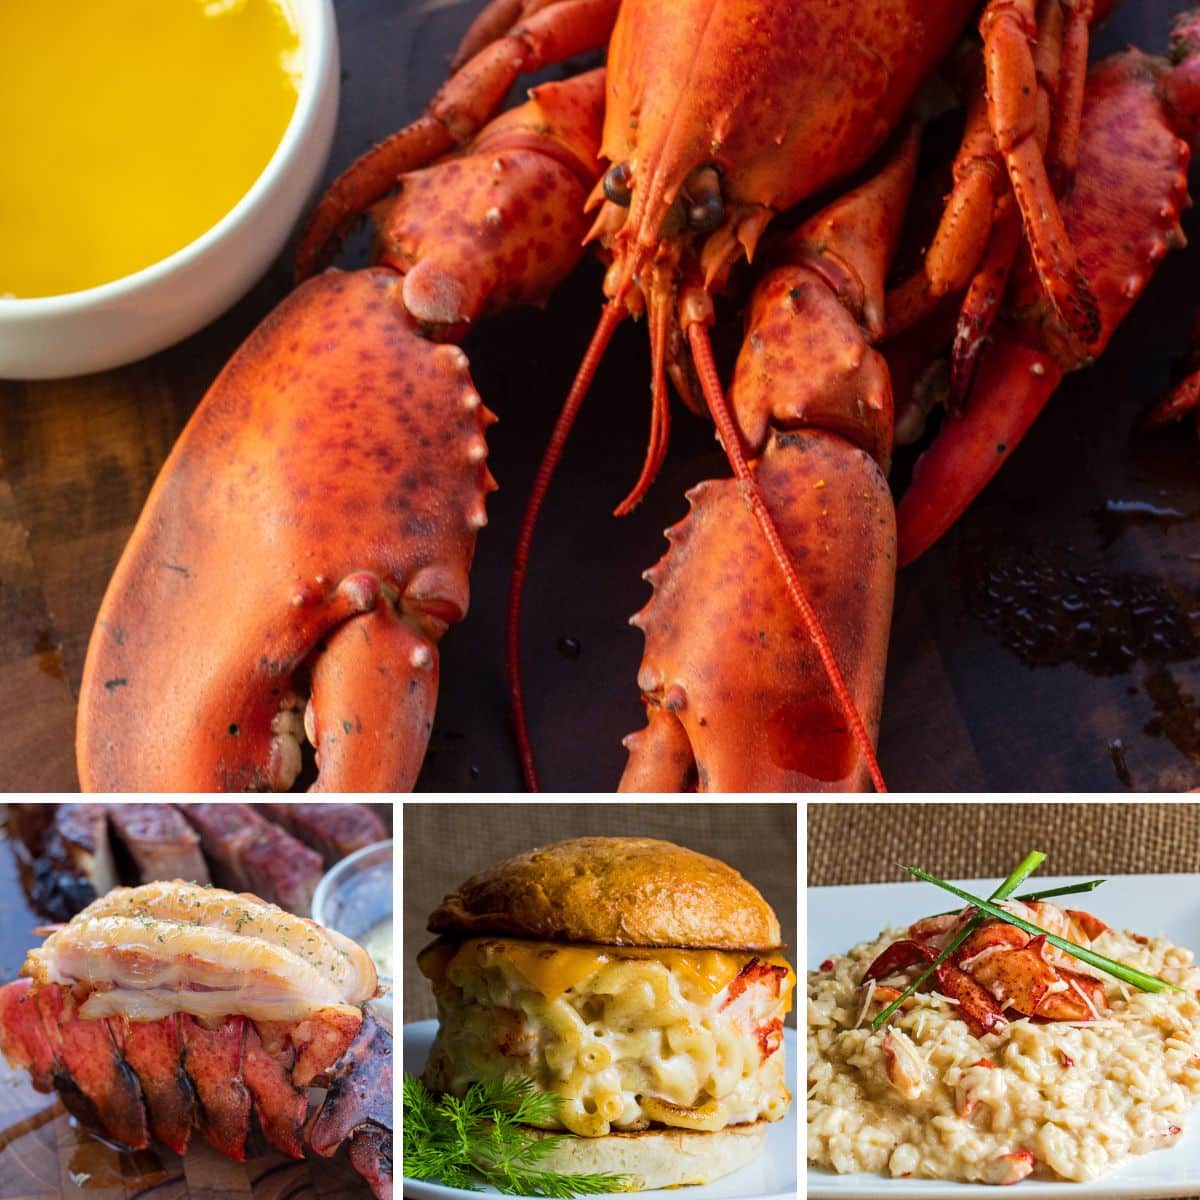 Gambar kolase persegi menampilkan beberapa hidangan lobster.